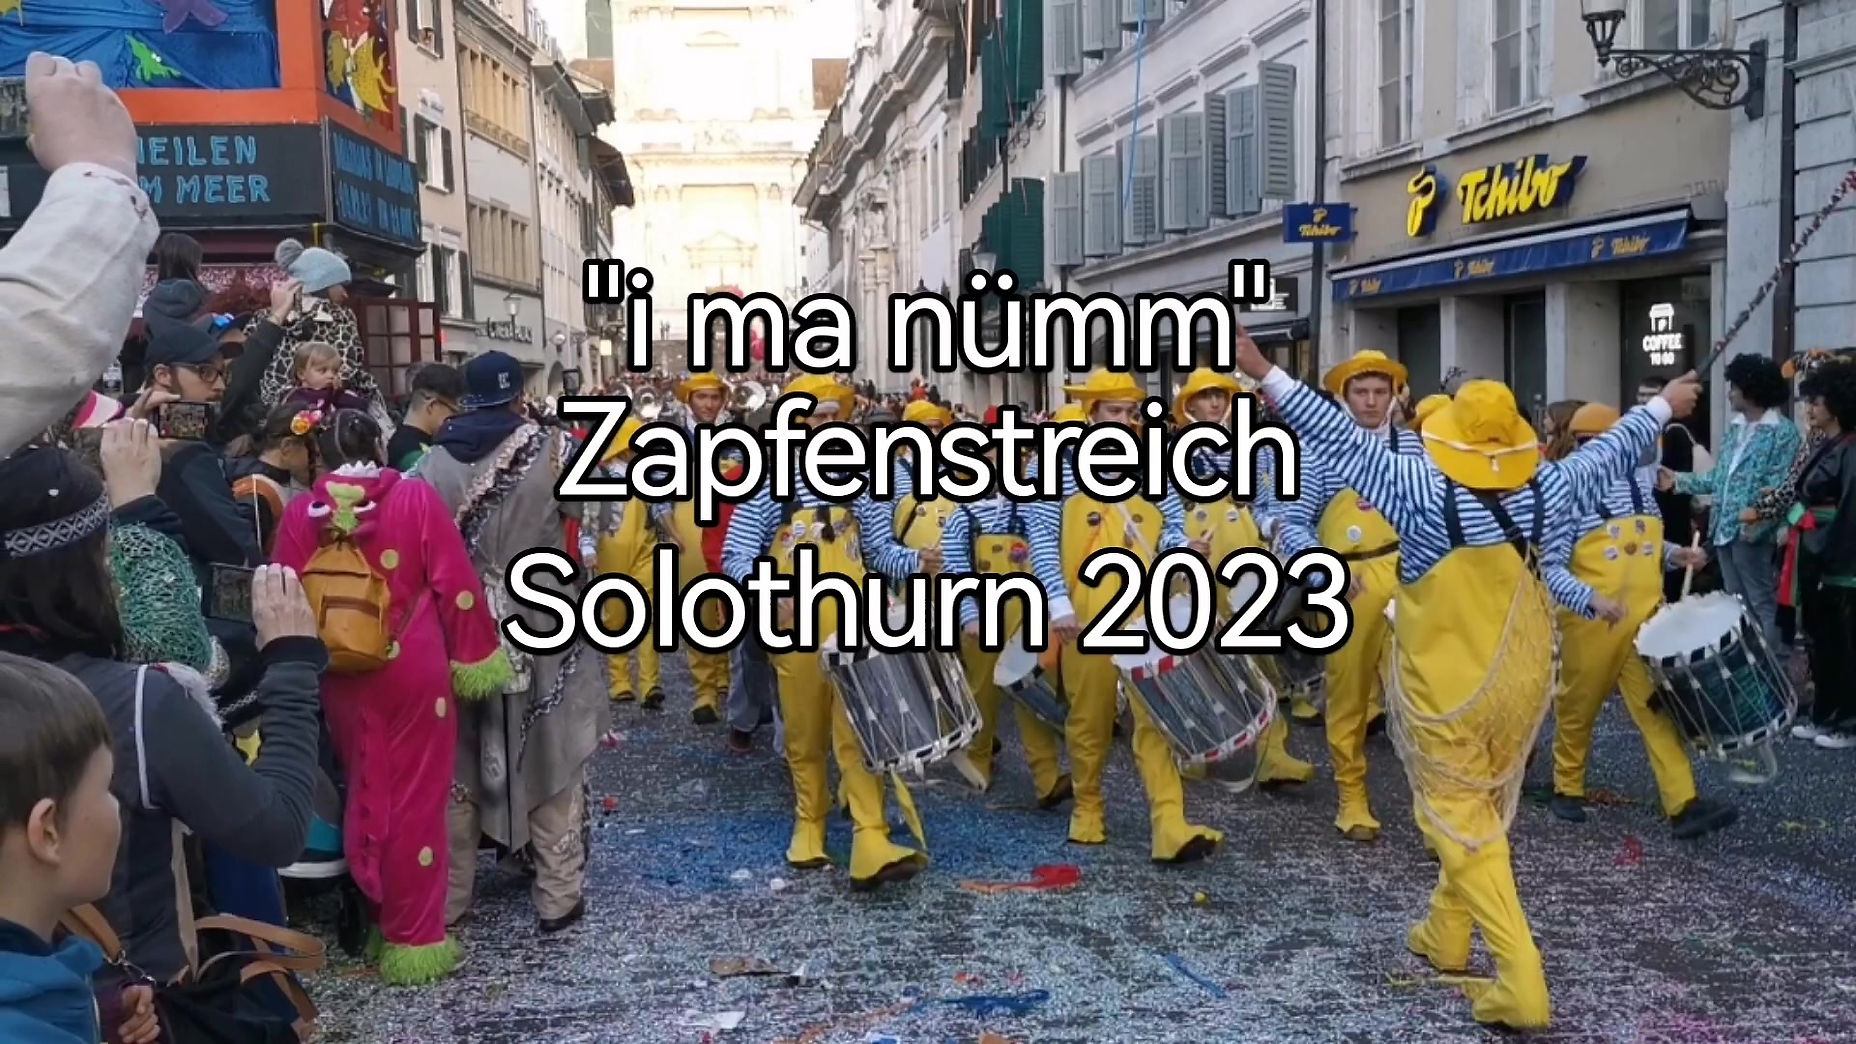 Zapfenstreich-solothurn-2023-temm-lohn-1080px-650mb